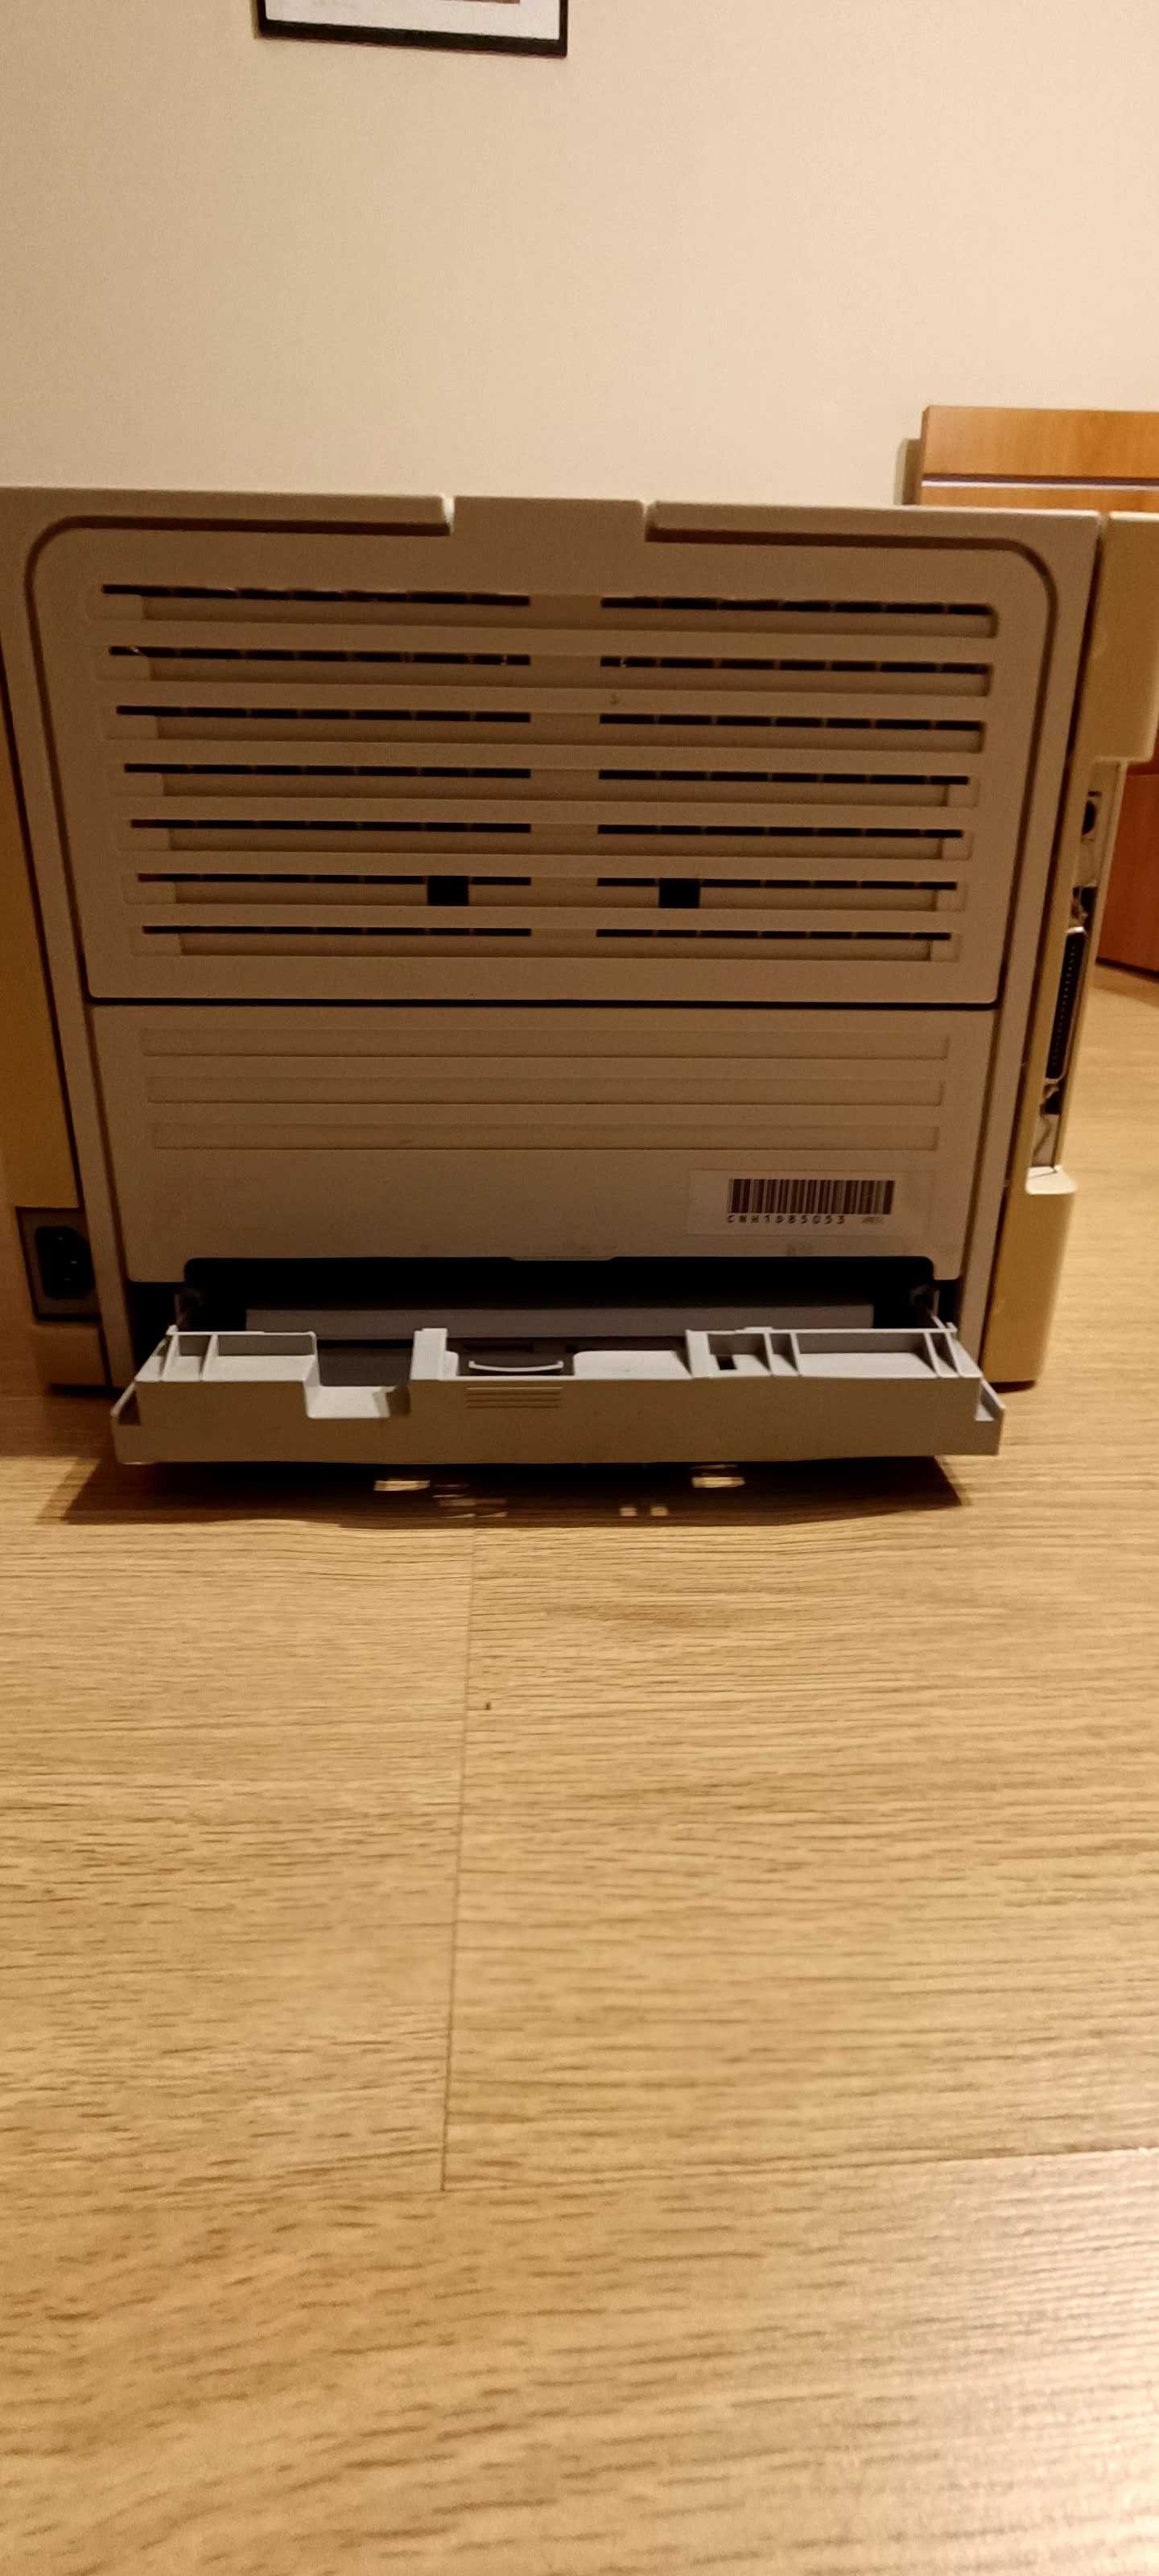 Imprimanta HP Laserjet 1160